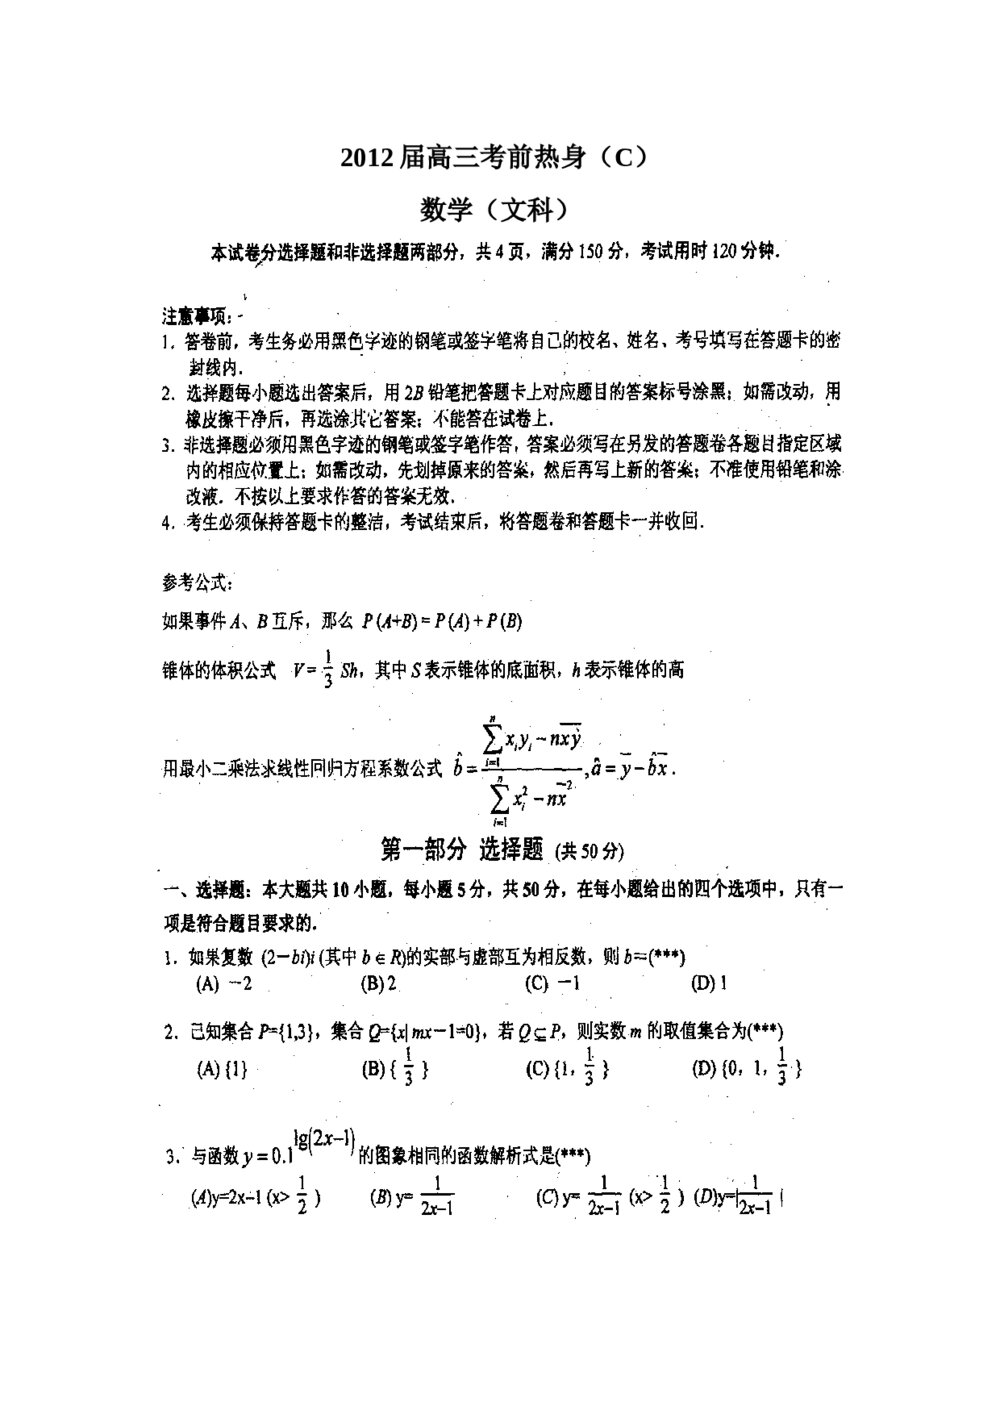 2012华南师大附中高三考前热身数学(文科)+答案